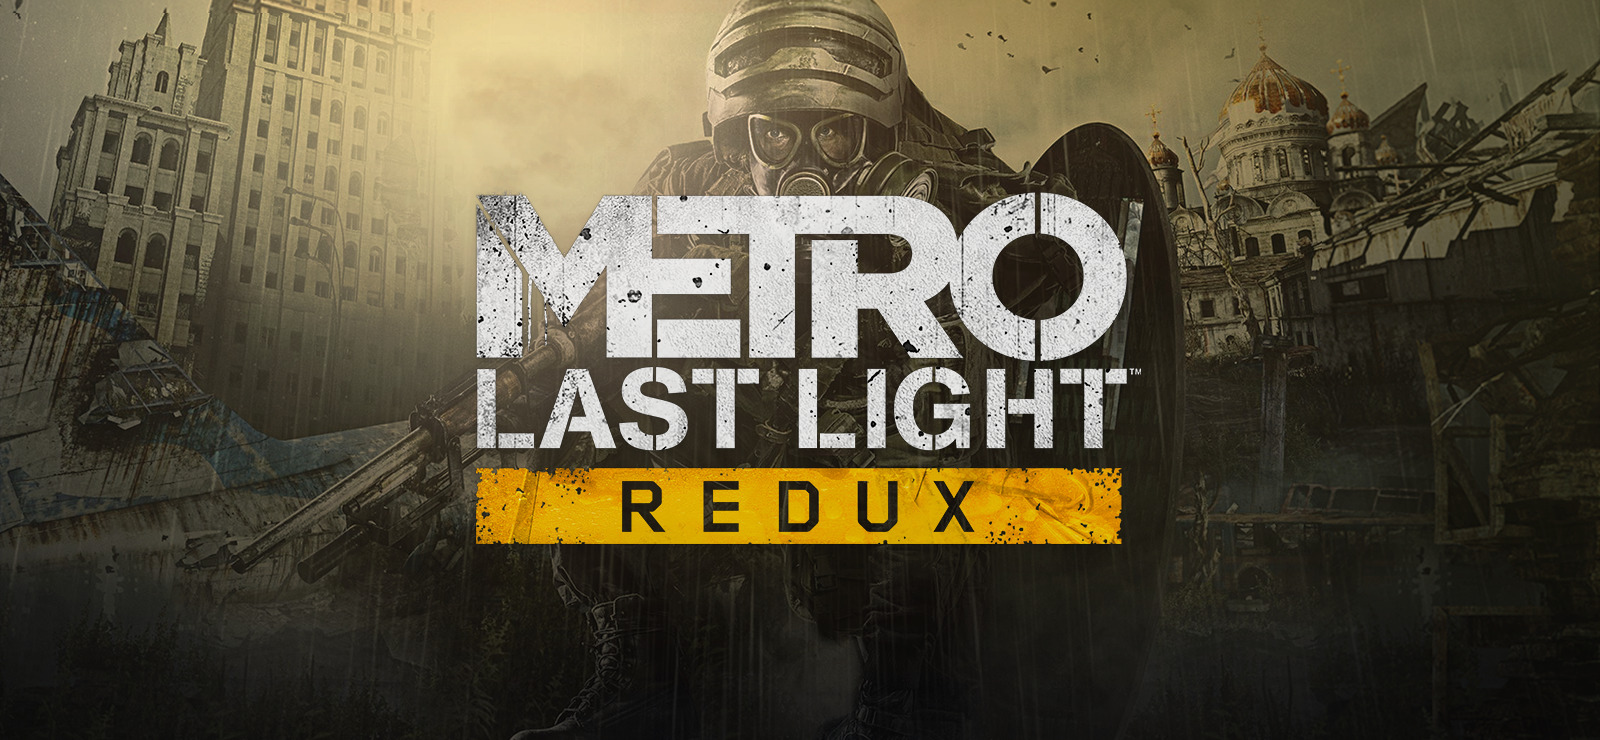 Metro: Last Light Redux on 